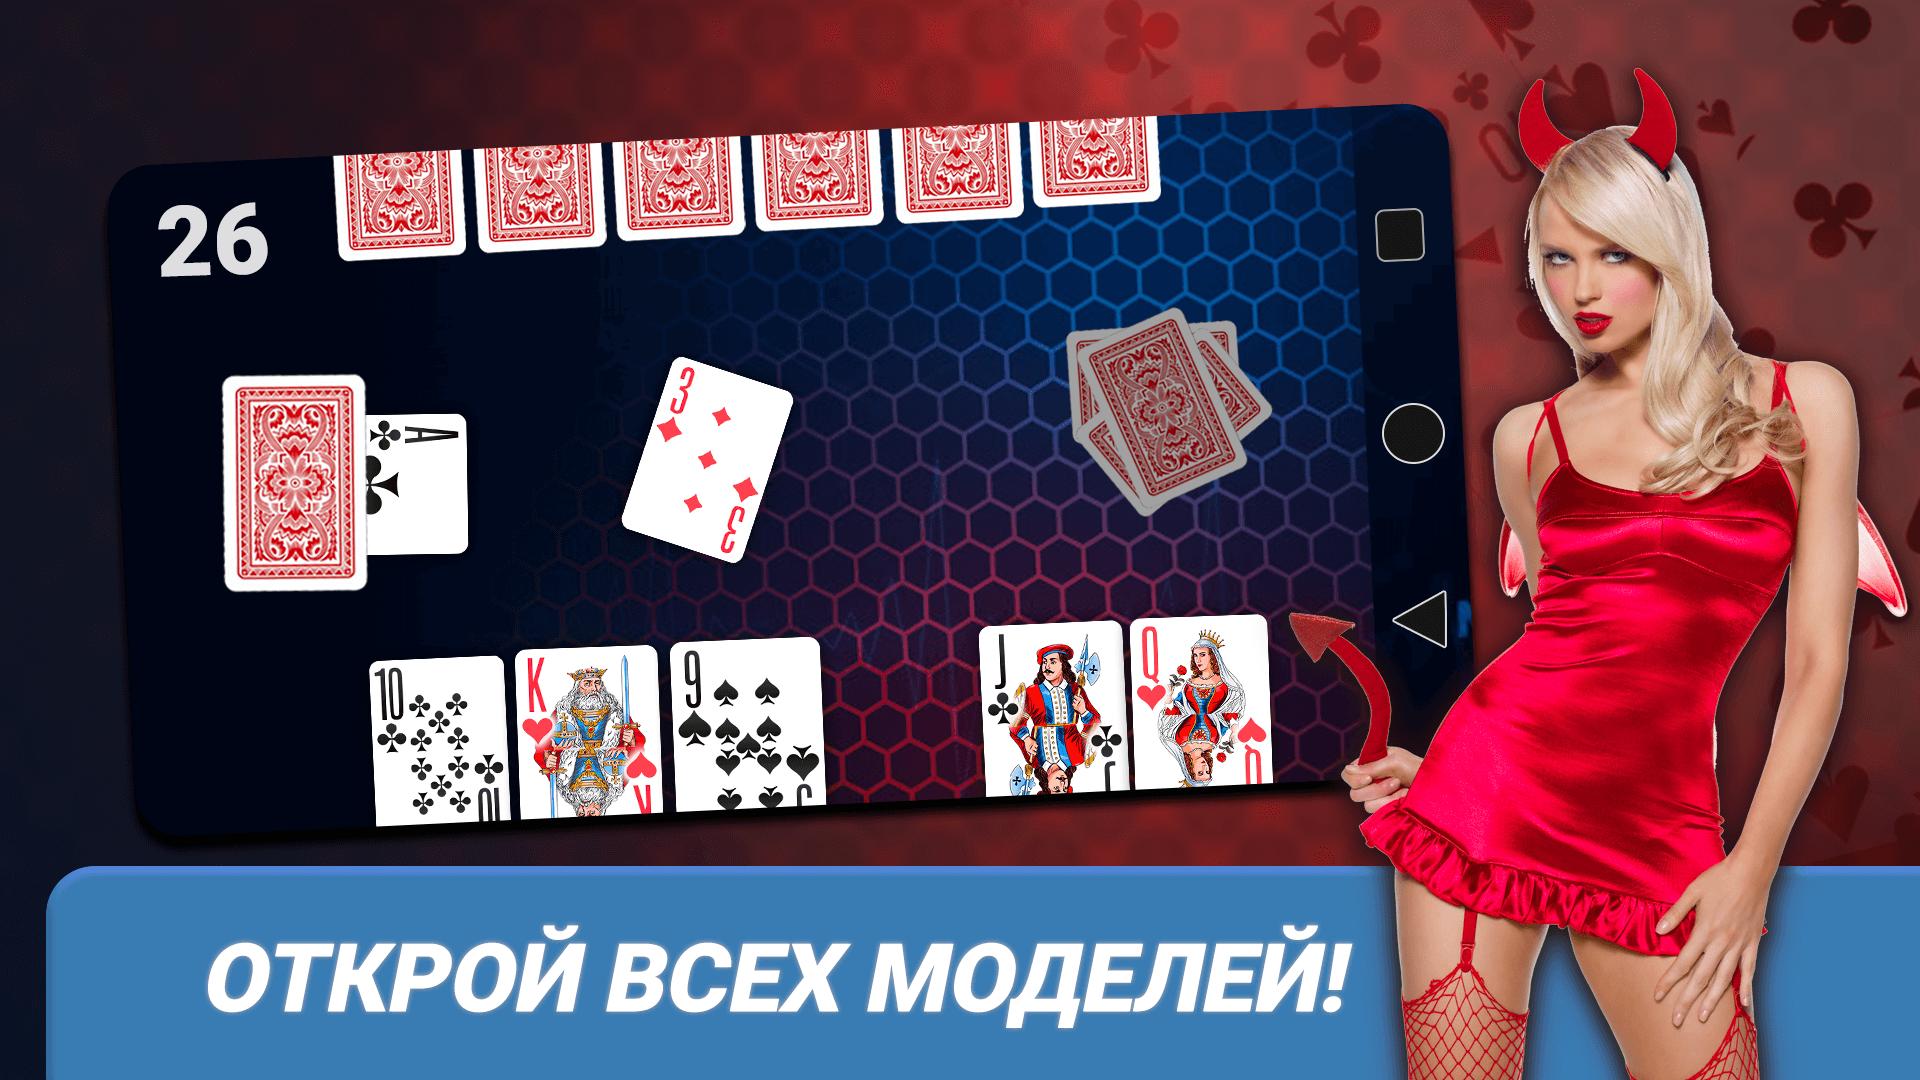 Раздеть девушку в карты играть казино онлайн бесплатно слот игры